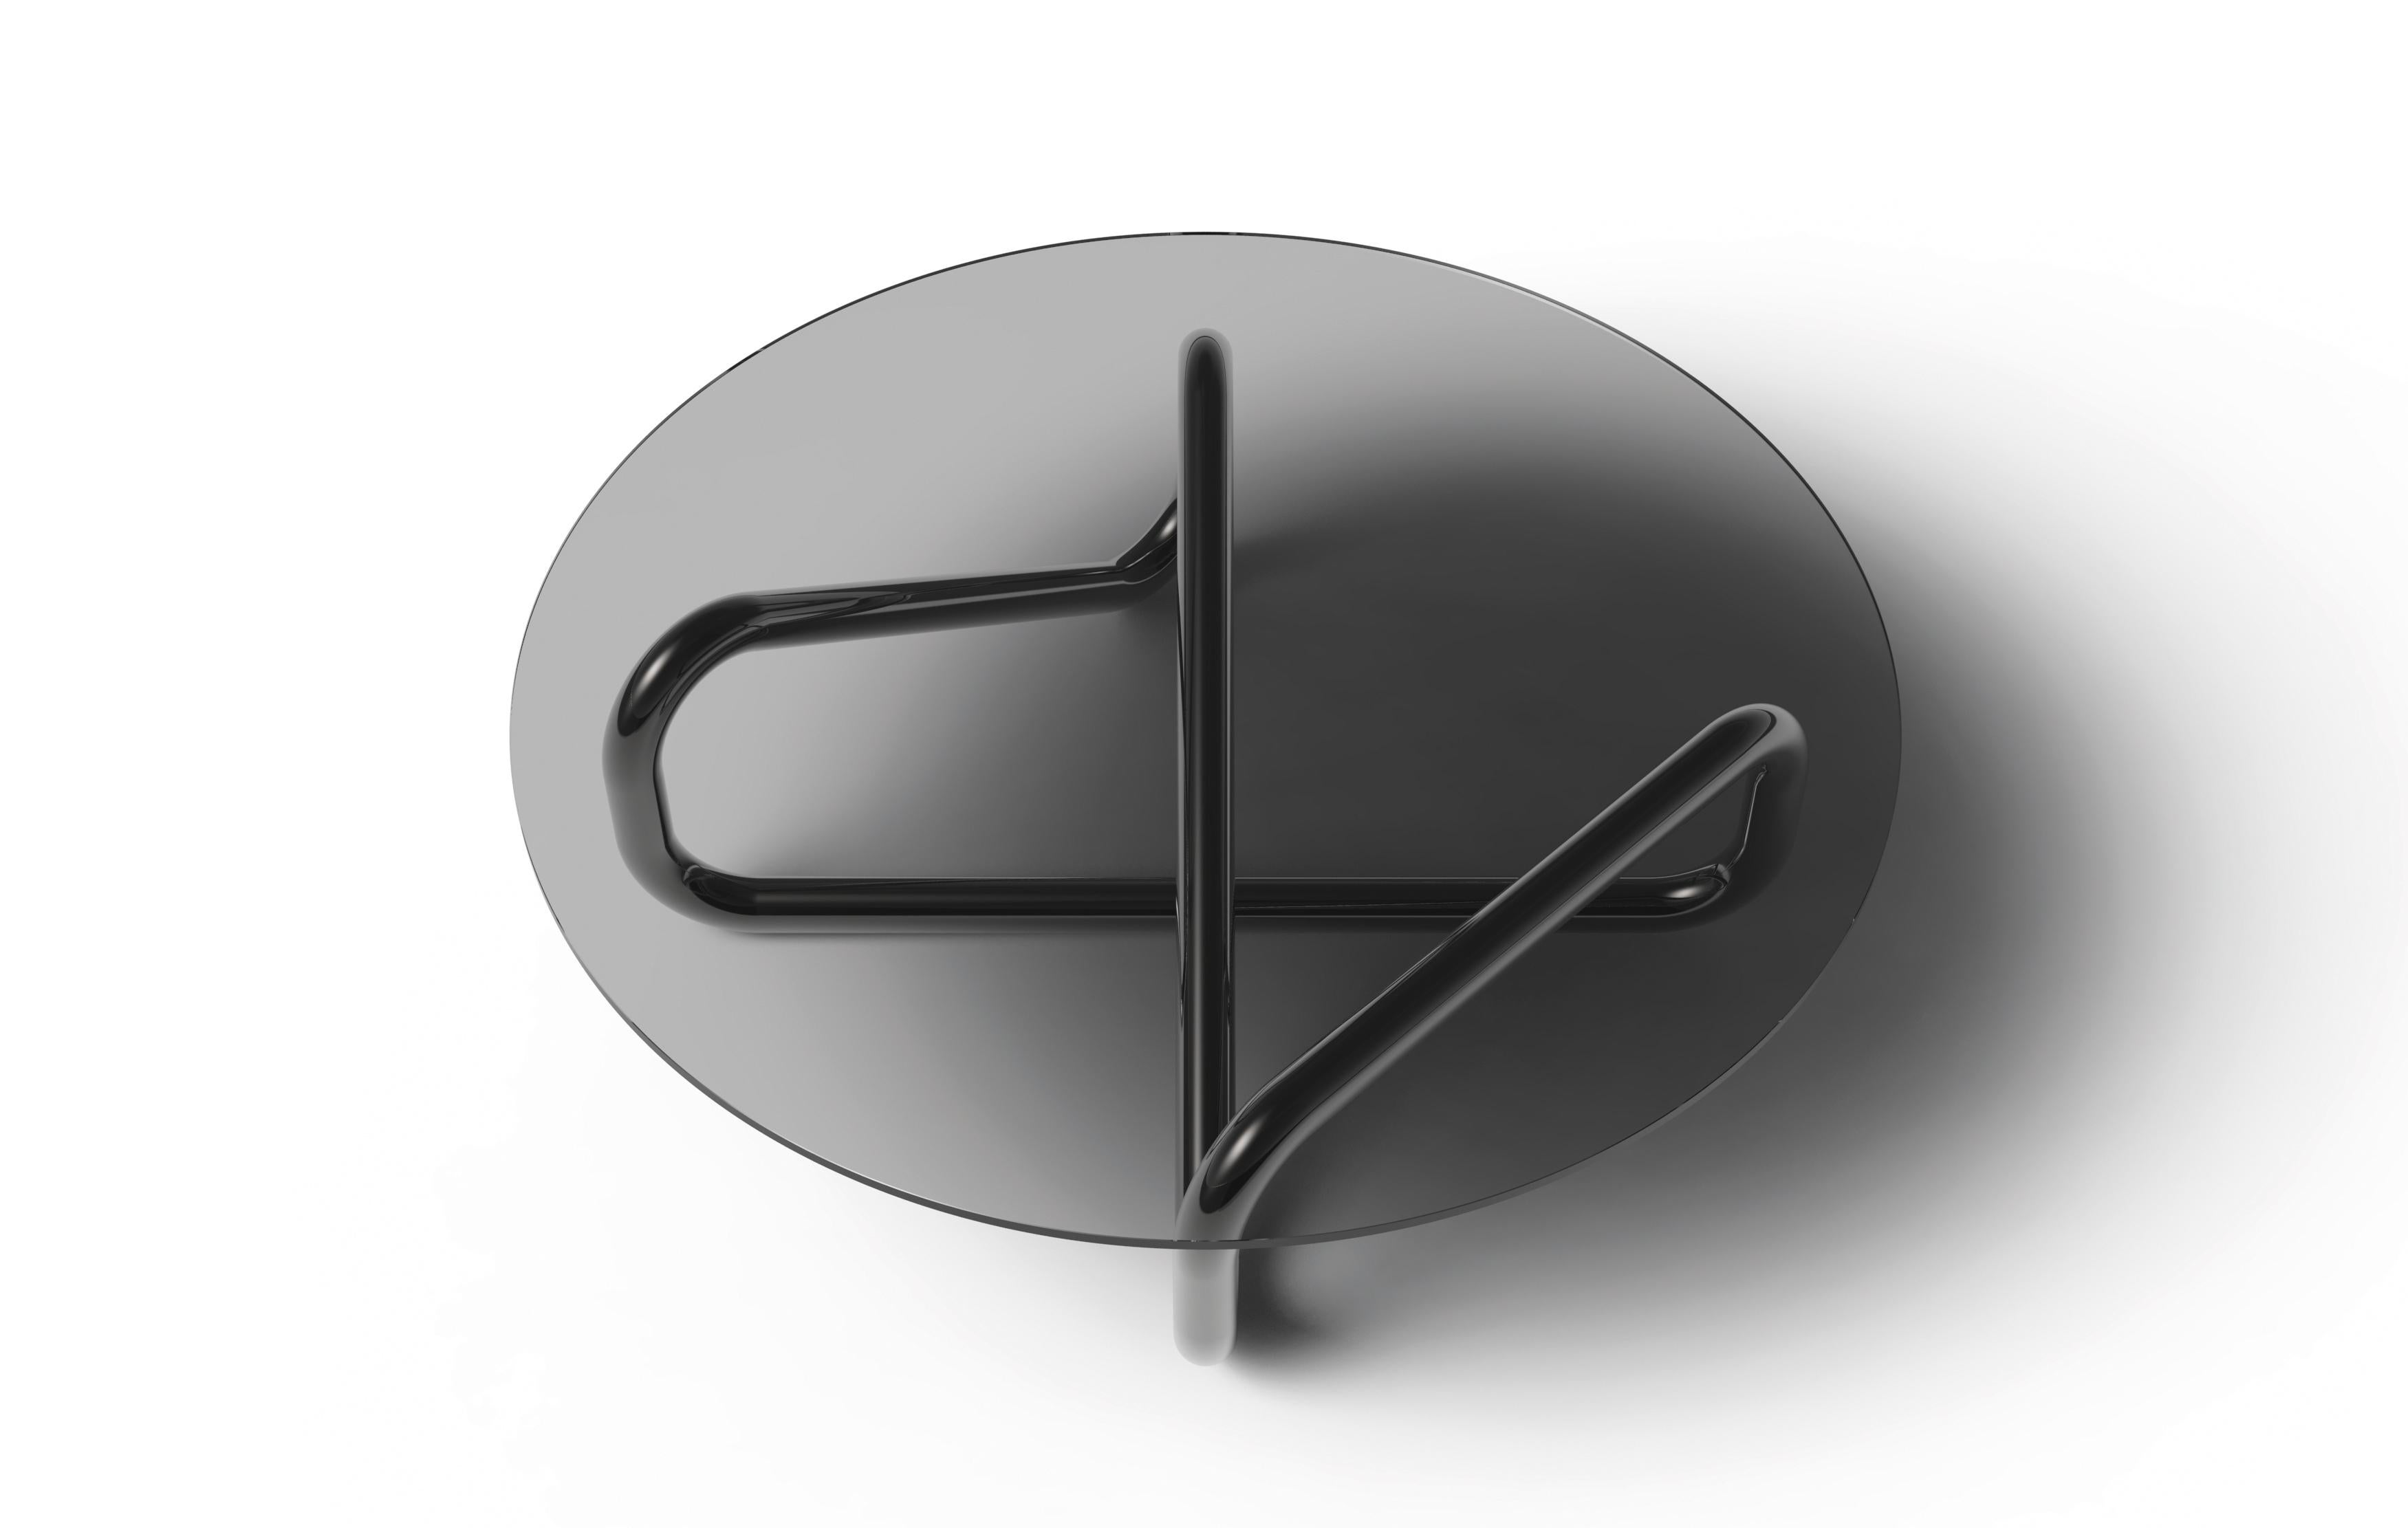 Petite table Arflex Infinity en verre fumé de Claesson Koivisto Rune. Le symbole mathématique de l'éternité est une figure qui ressemble à un chiffre 8 horizontal. L'analogie est bien sûr que si vous suivez la ligne, il vous faudra l'éternité pour